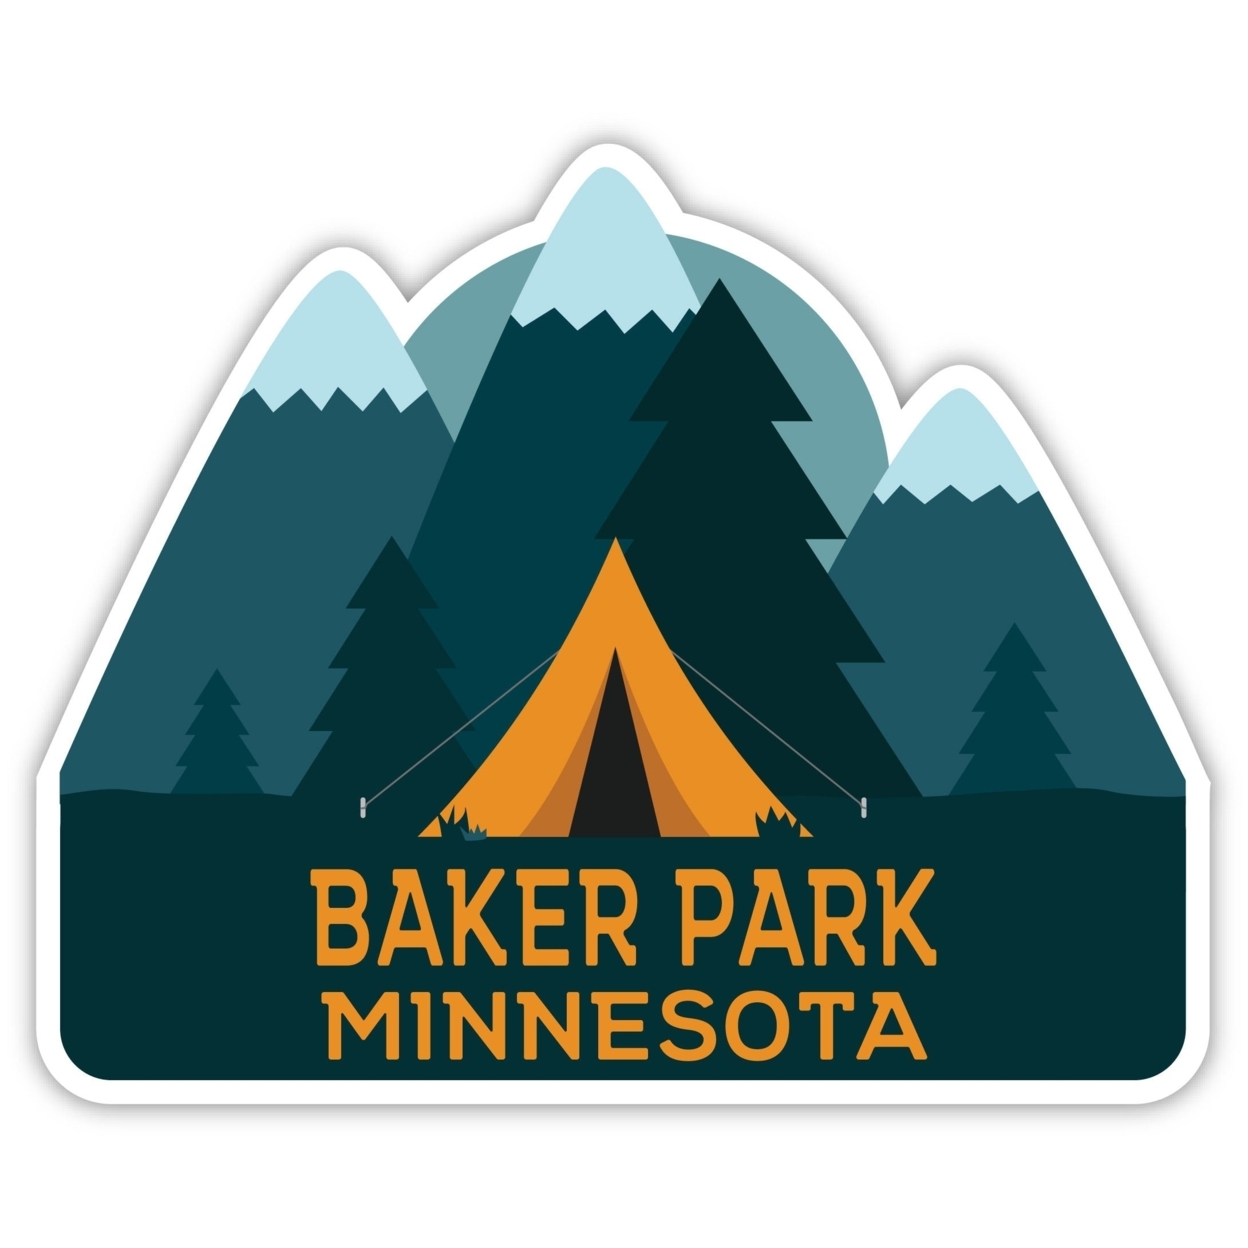 Baker Park Minnesota Souvenir Decorative Stickers (Choose Theme And Size) - Single Unit, 6-Inch, Tent